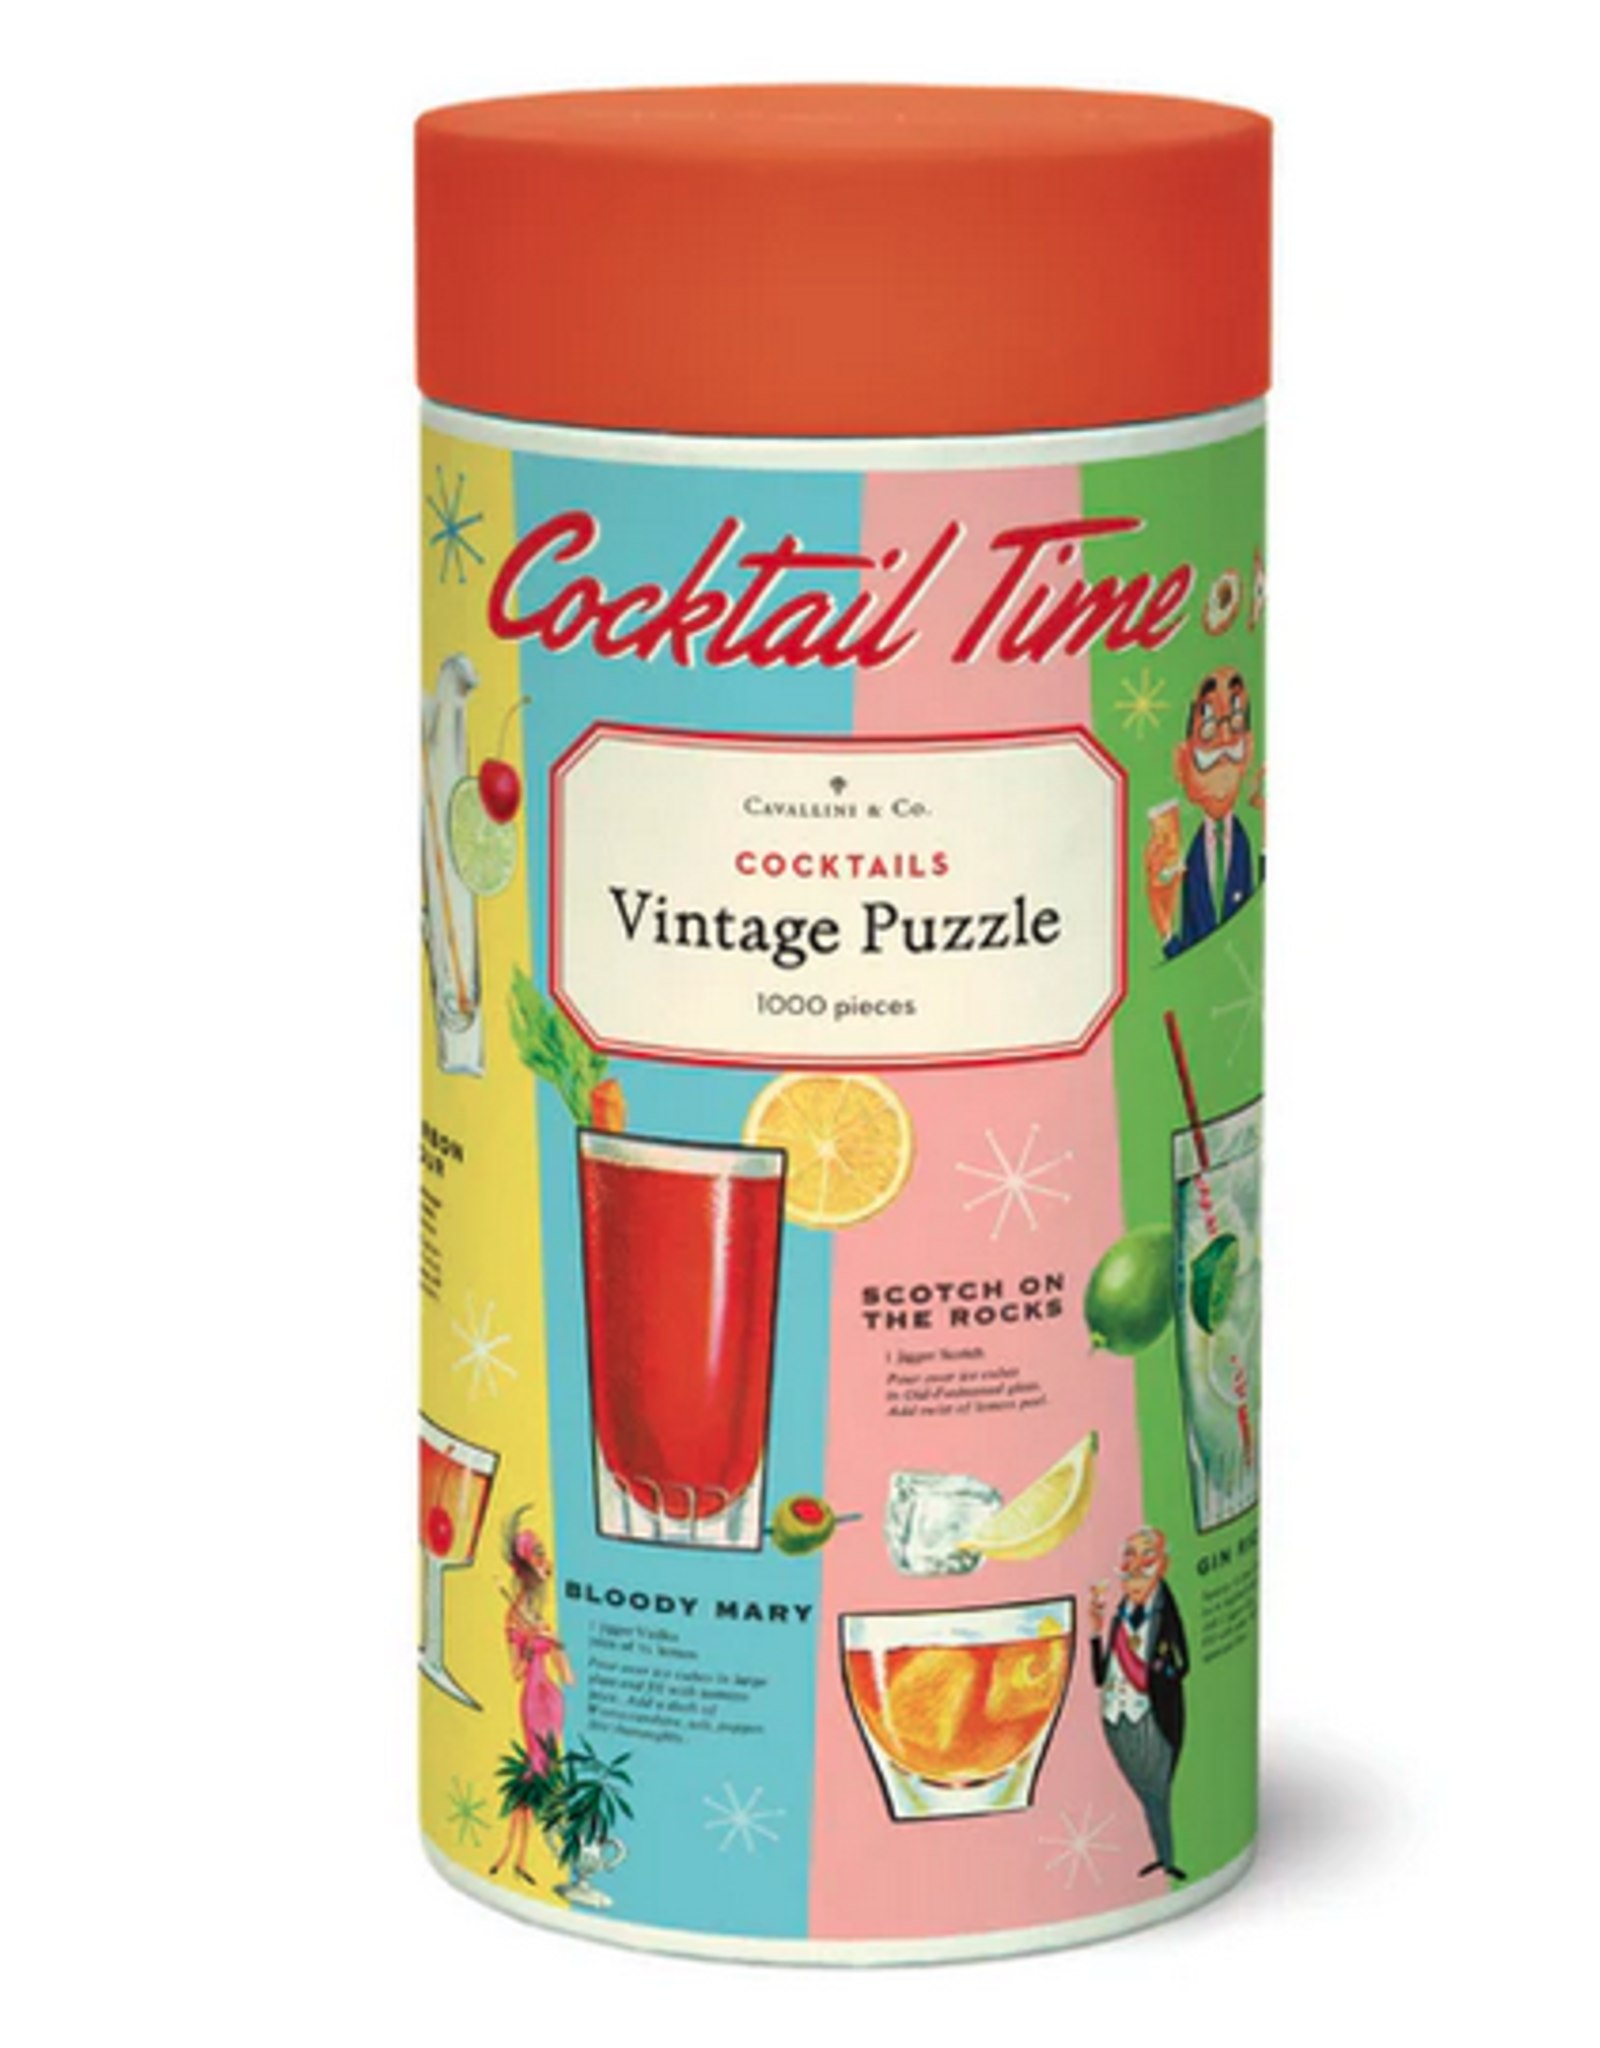 Cocktails Vintage Puzzle - 1000 Piece